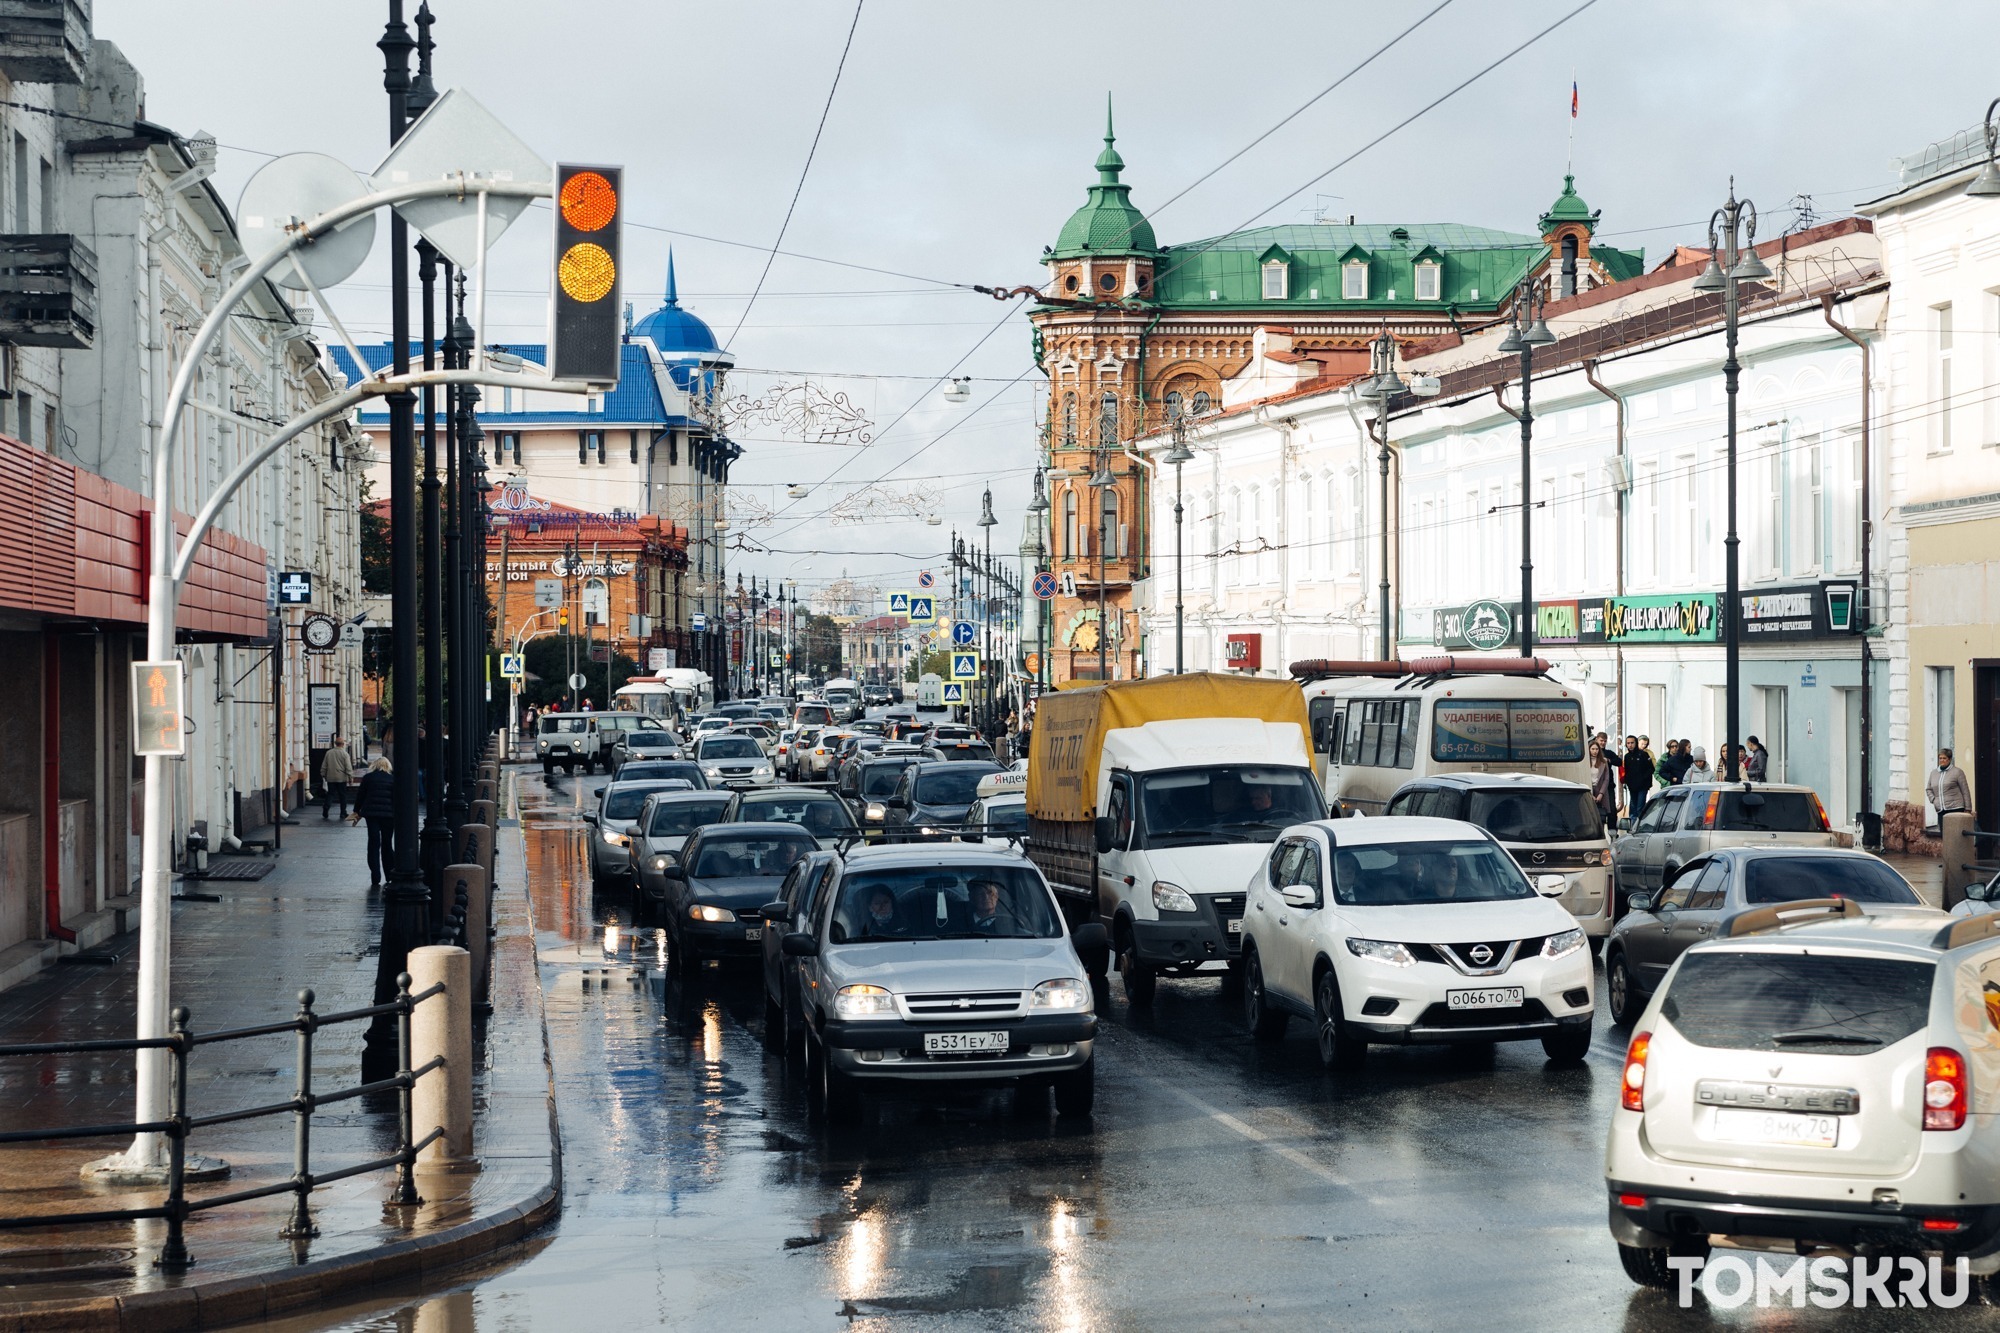 «За 20 лет рекламного хаоса у бизнеса исказилось понимание, зачем нужны фасады зданий»: урбанист о дизайн-коде Томска